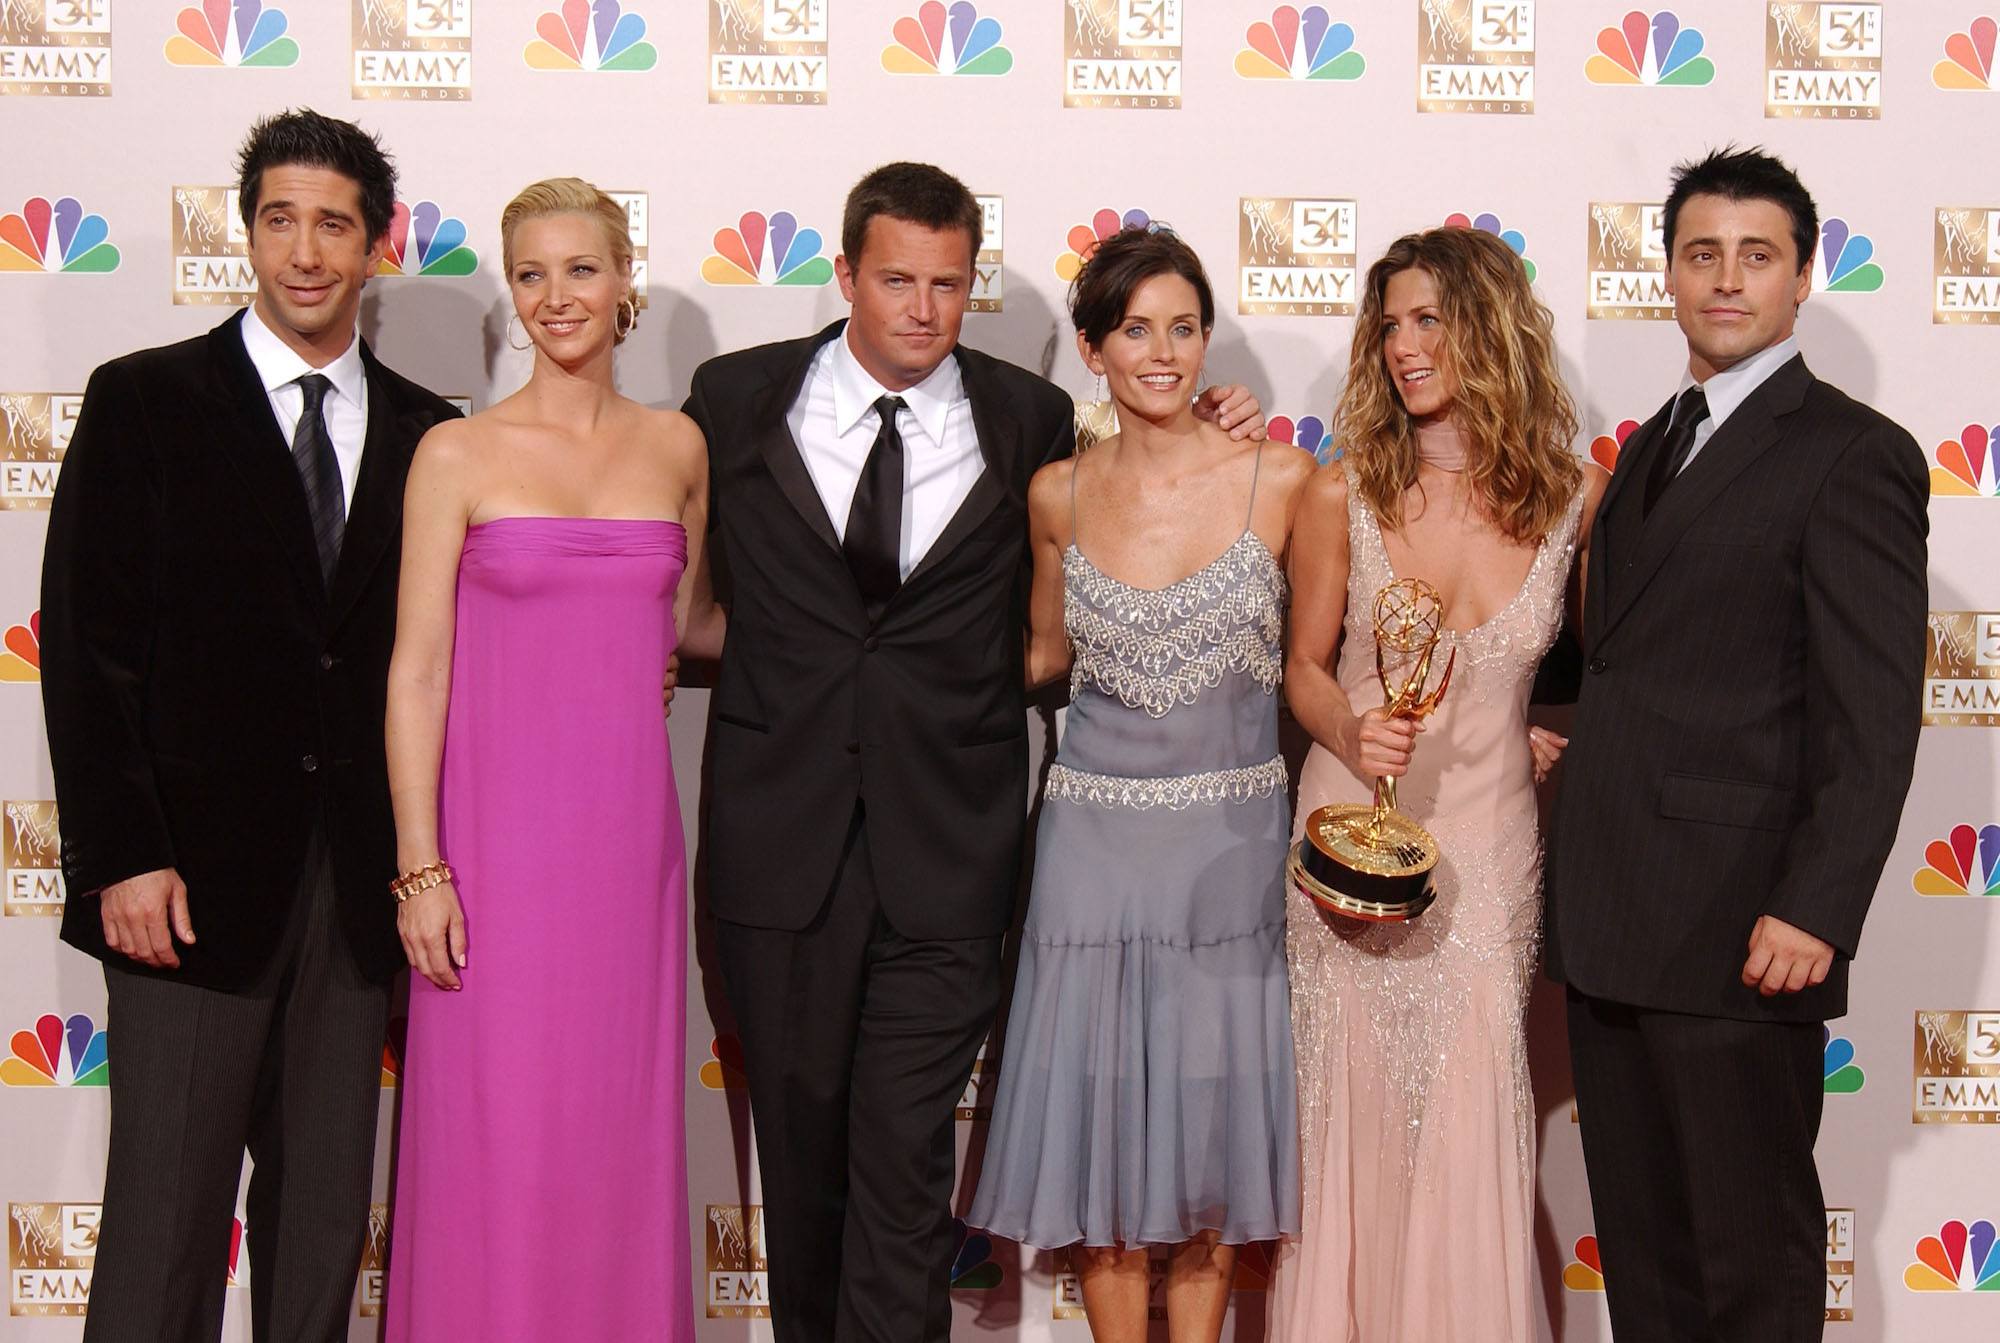 David Schwimmer, Lisa Kudrow, Matthew Perry, Courteney Cox, Jennifer Aniston and Matt LeBlanc